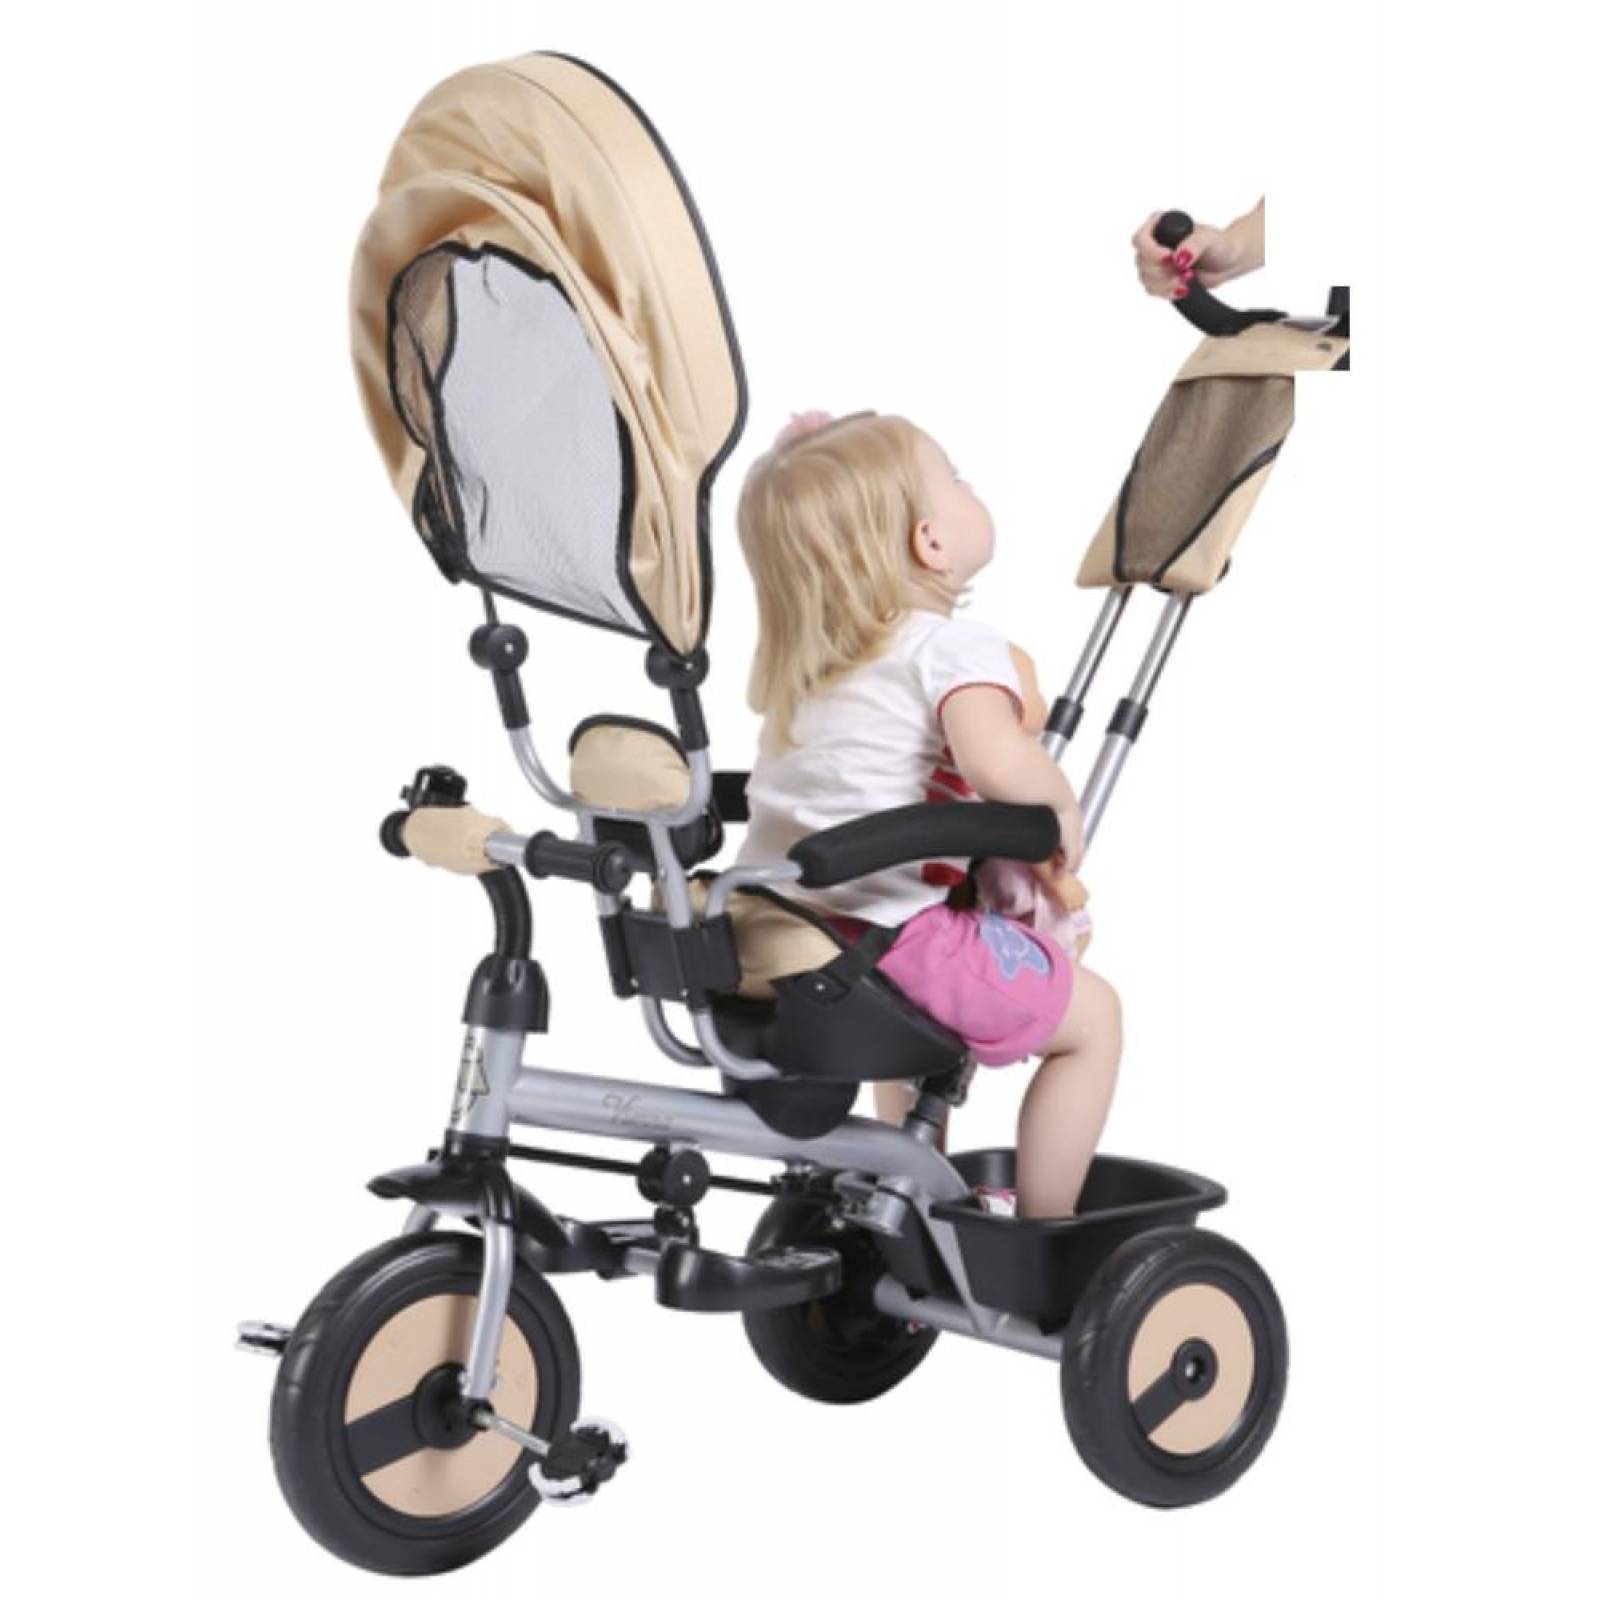 Triciclo para Bebe de lujo giratorio y dirigible de 6 meses a 5 años Beige